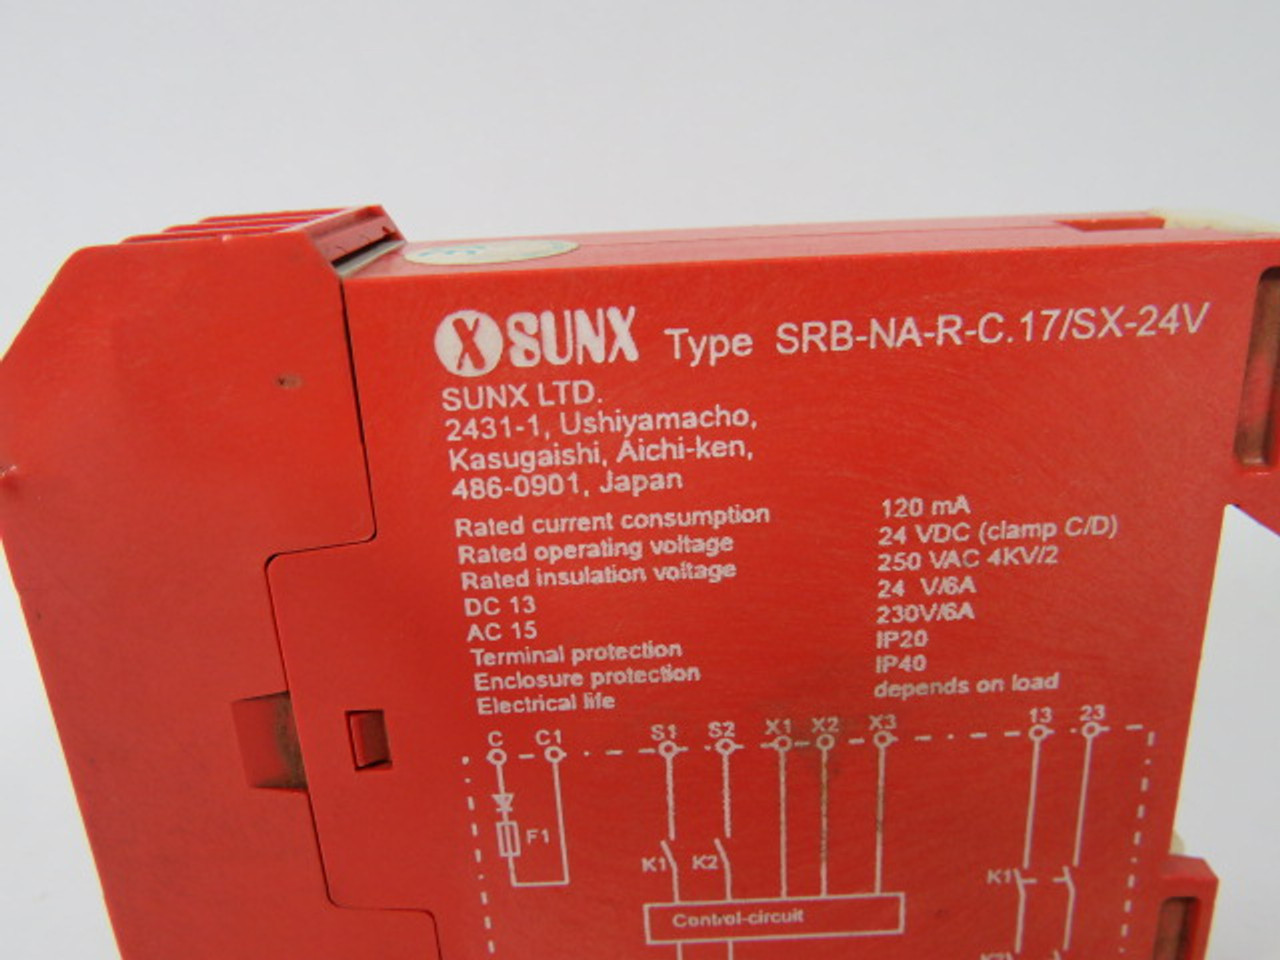 Sunx SRB-NA-R-C.17/SX-24V Safety Relay 24VDC 250VAC 120mA USED